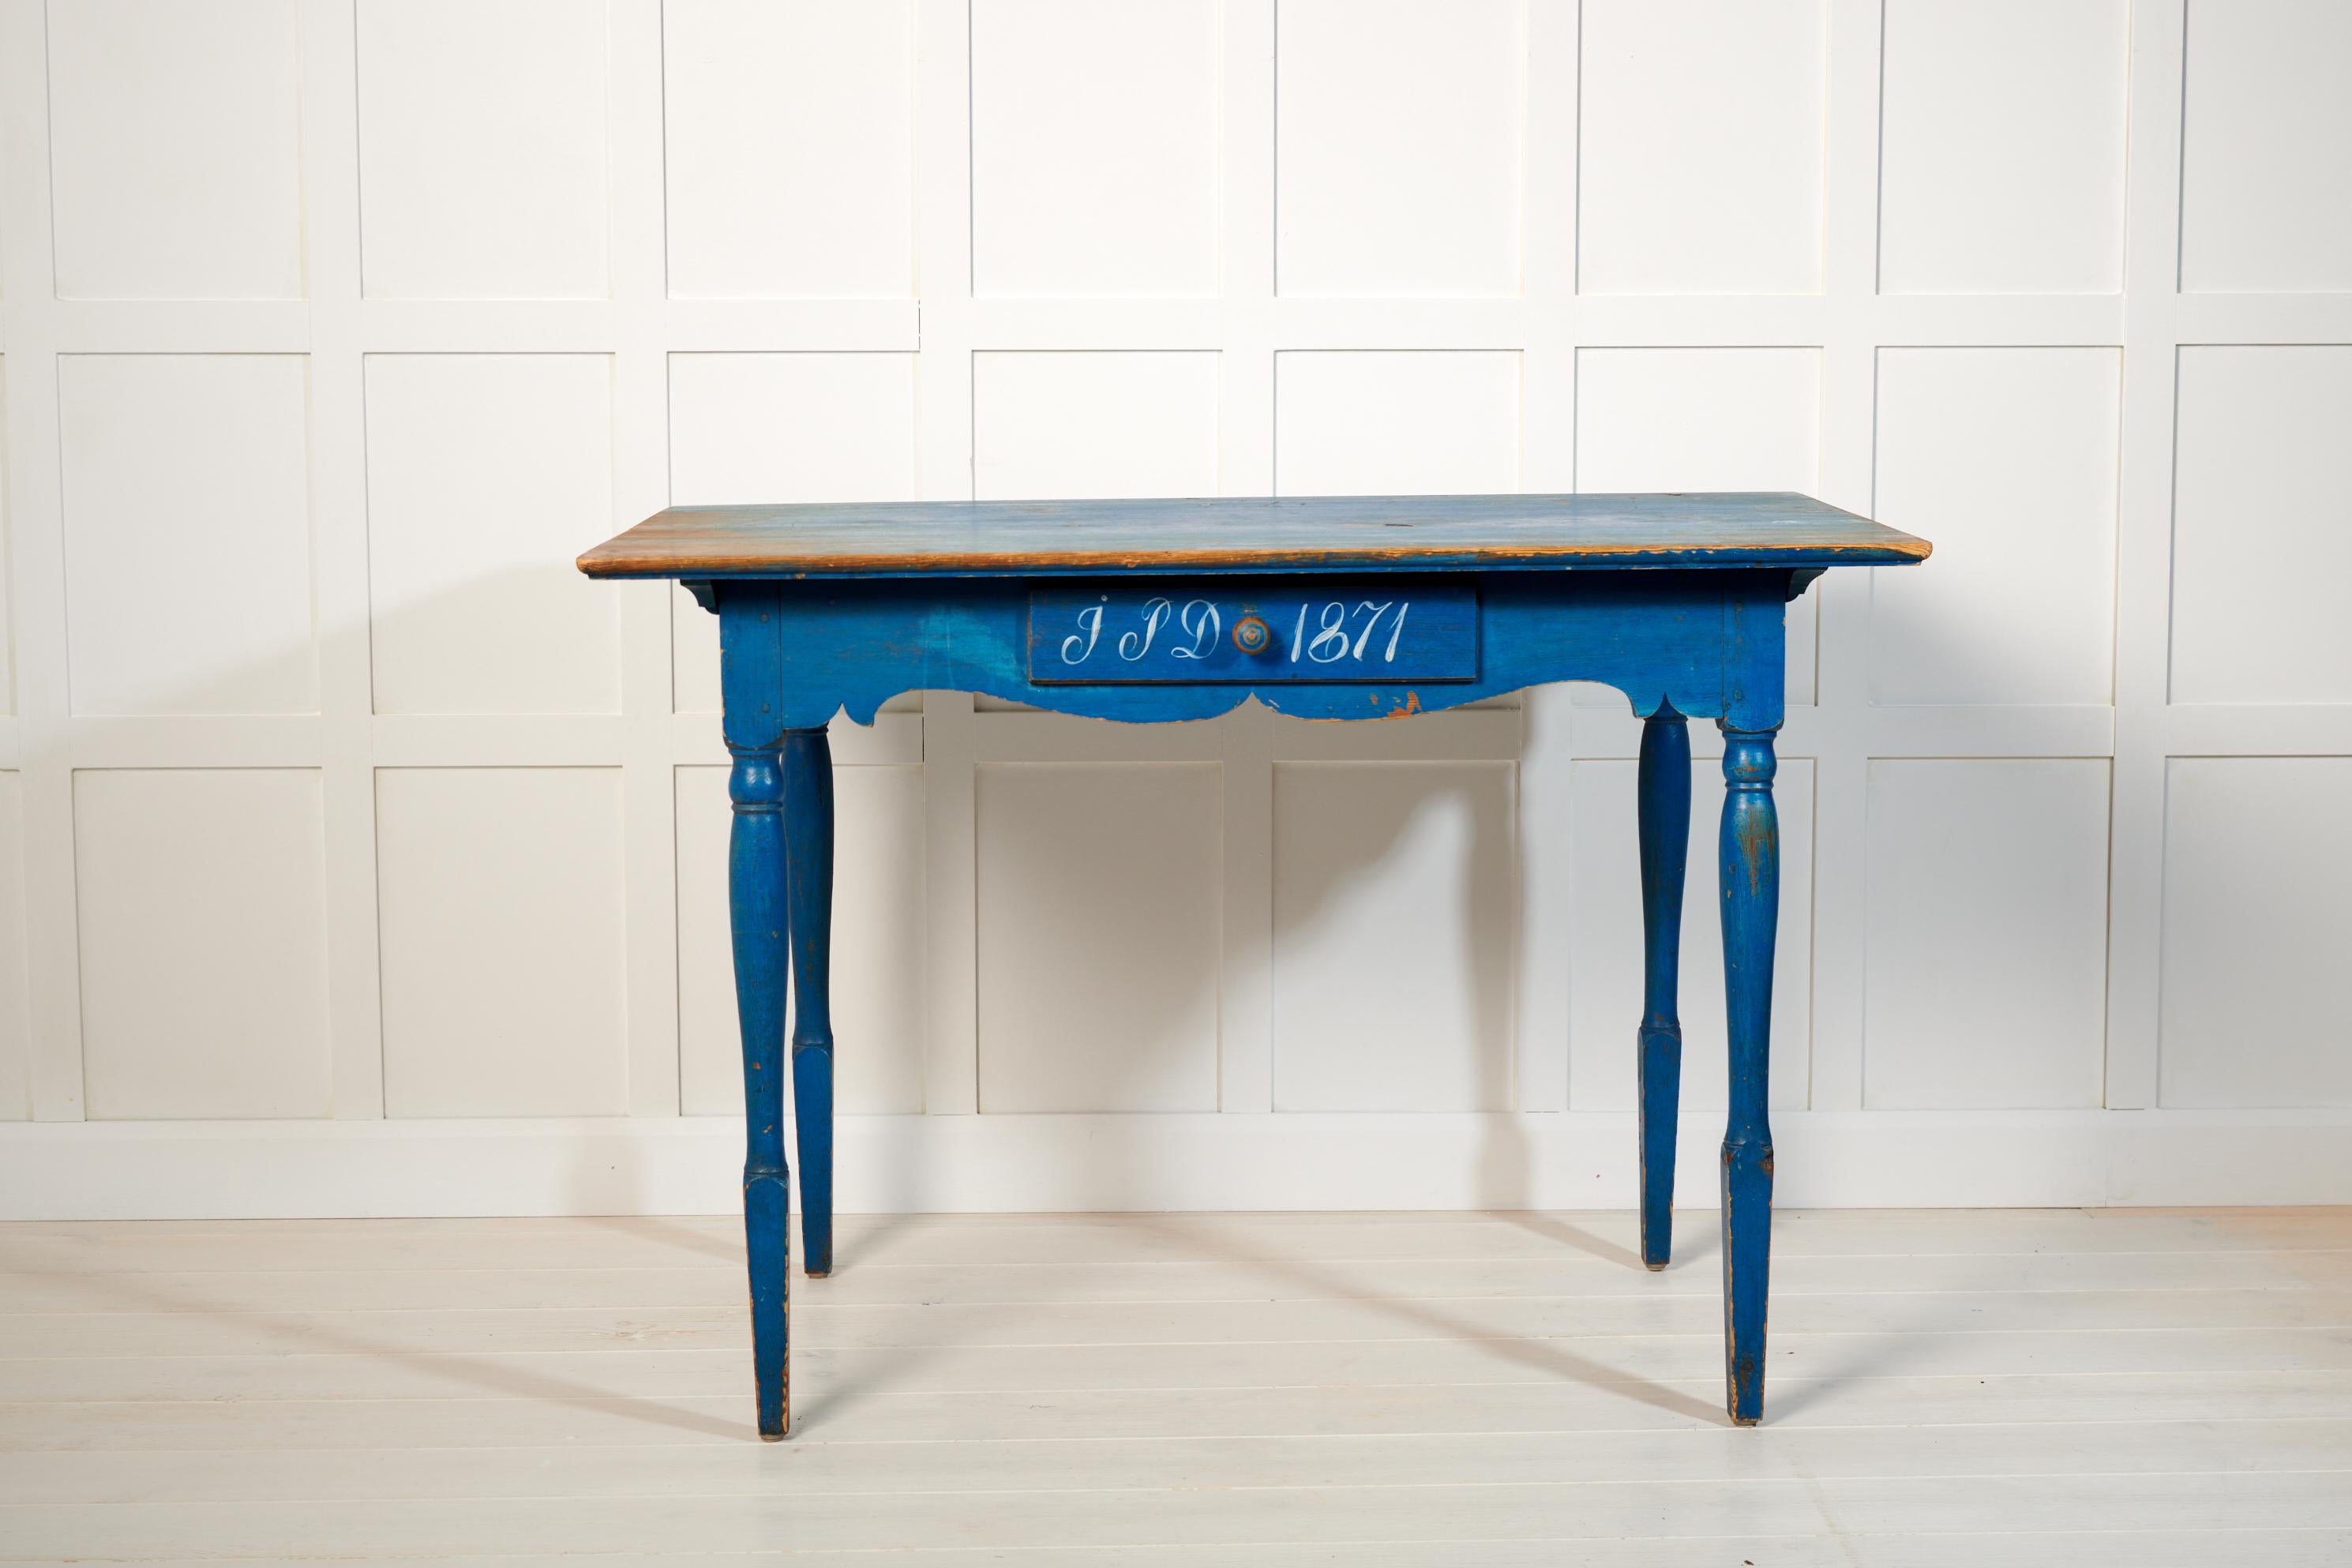 Antiker schwedischer Landhaustisch oder Schreibtisch mit einer Schublade. Der Tisch ist ein authentisches Landhausmöbel aus Nordschweden, handgefertigt aus massiver Kiefer. Der Tisch hat die ursprüngliche blaue Farbe mit aufgemalten Initialen und